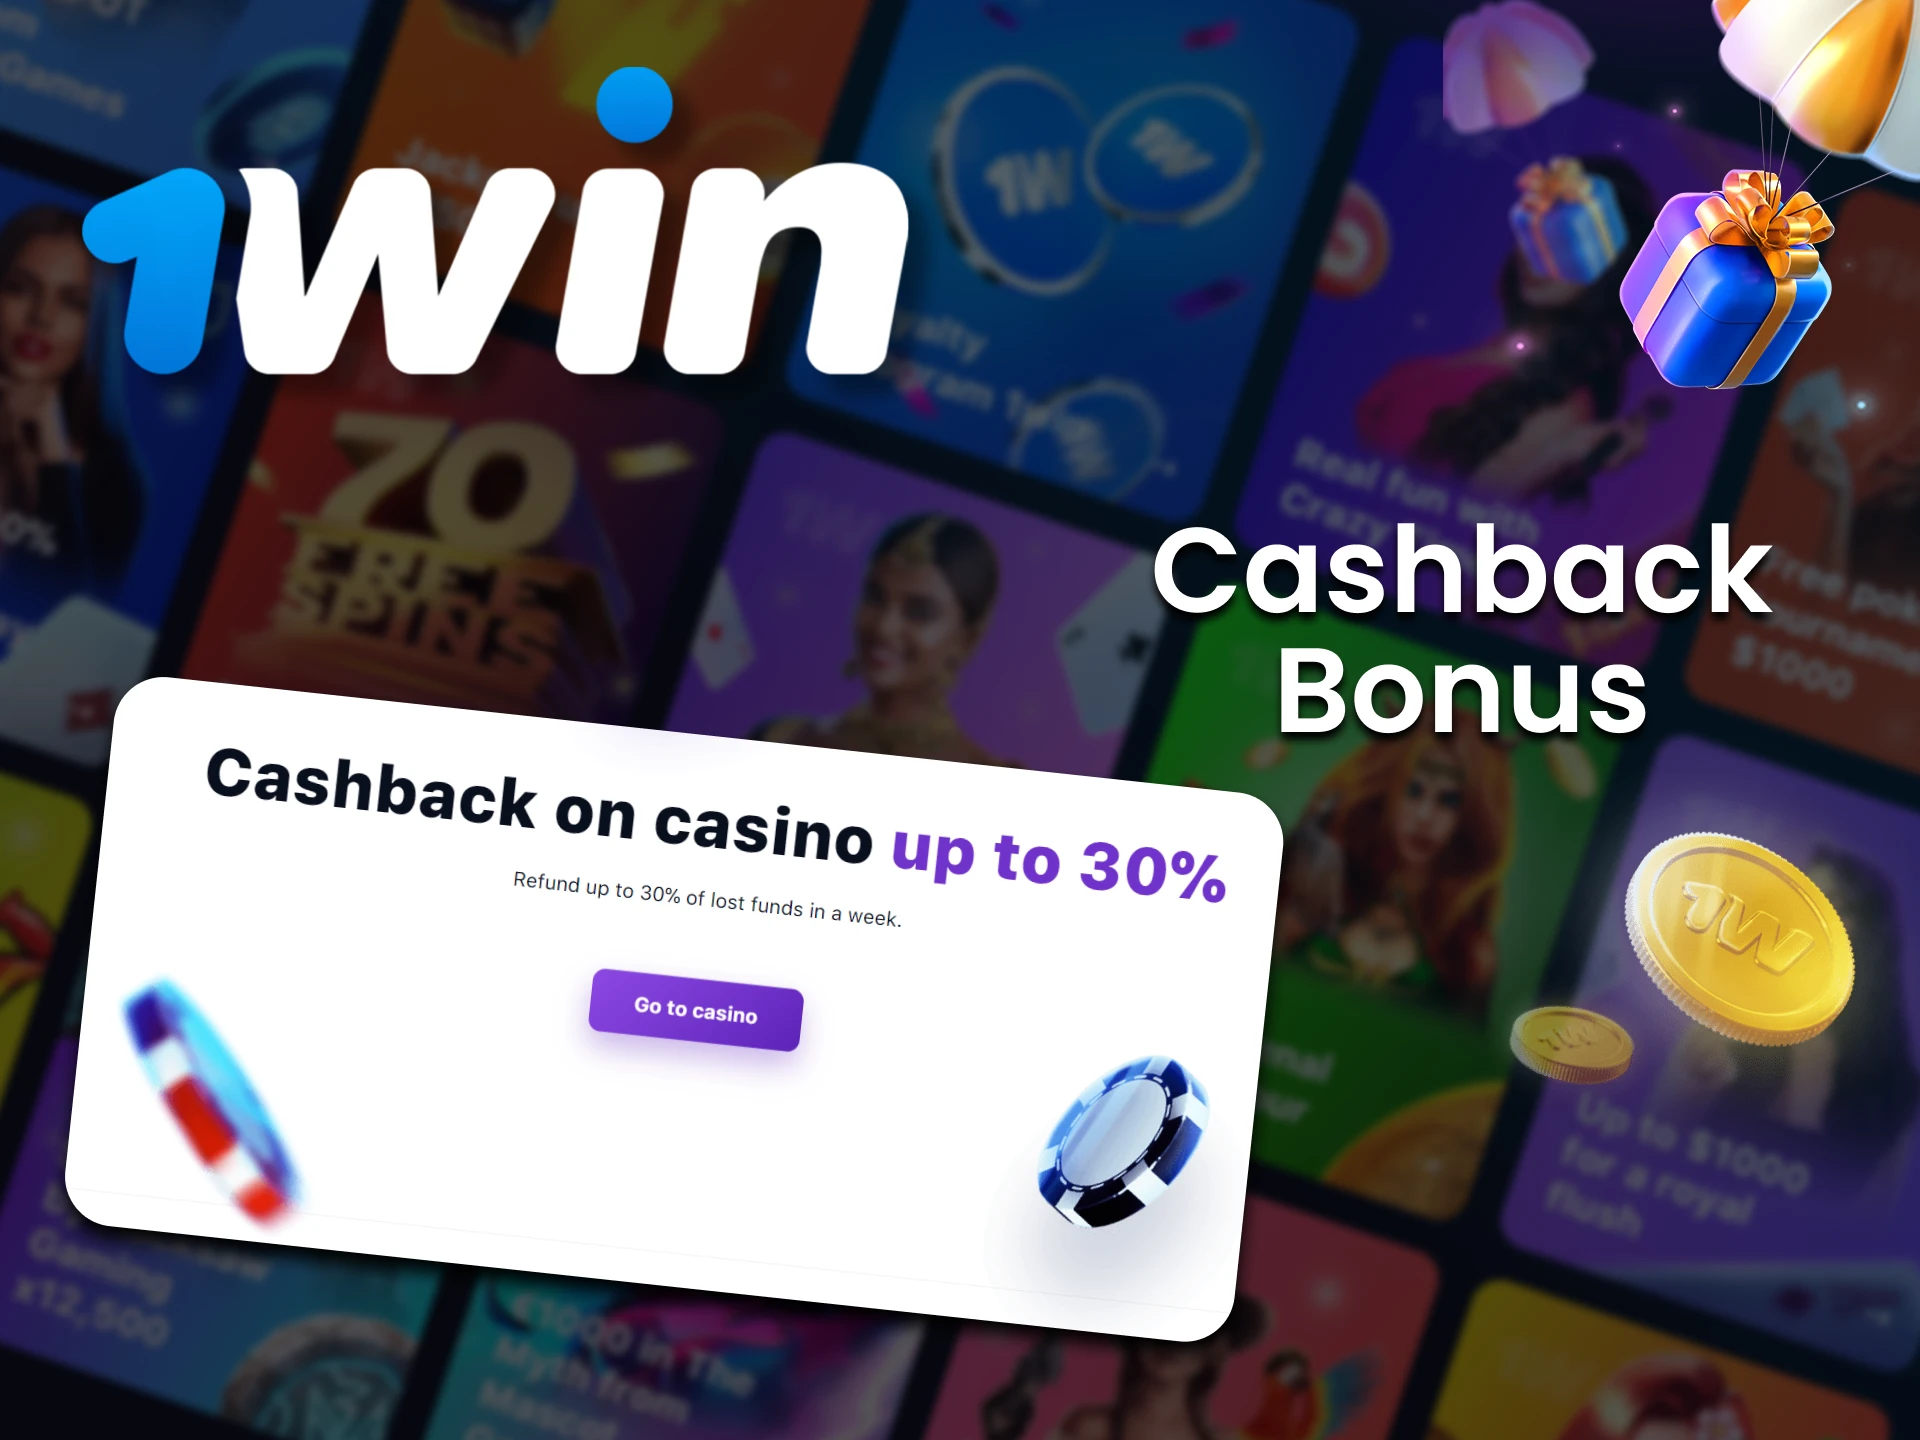 Get cashback bonus up to 30% for 1Win Kabaddi bets.